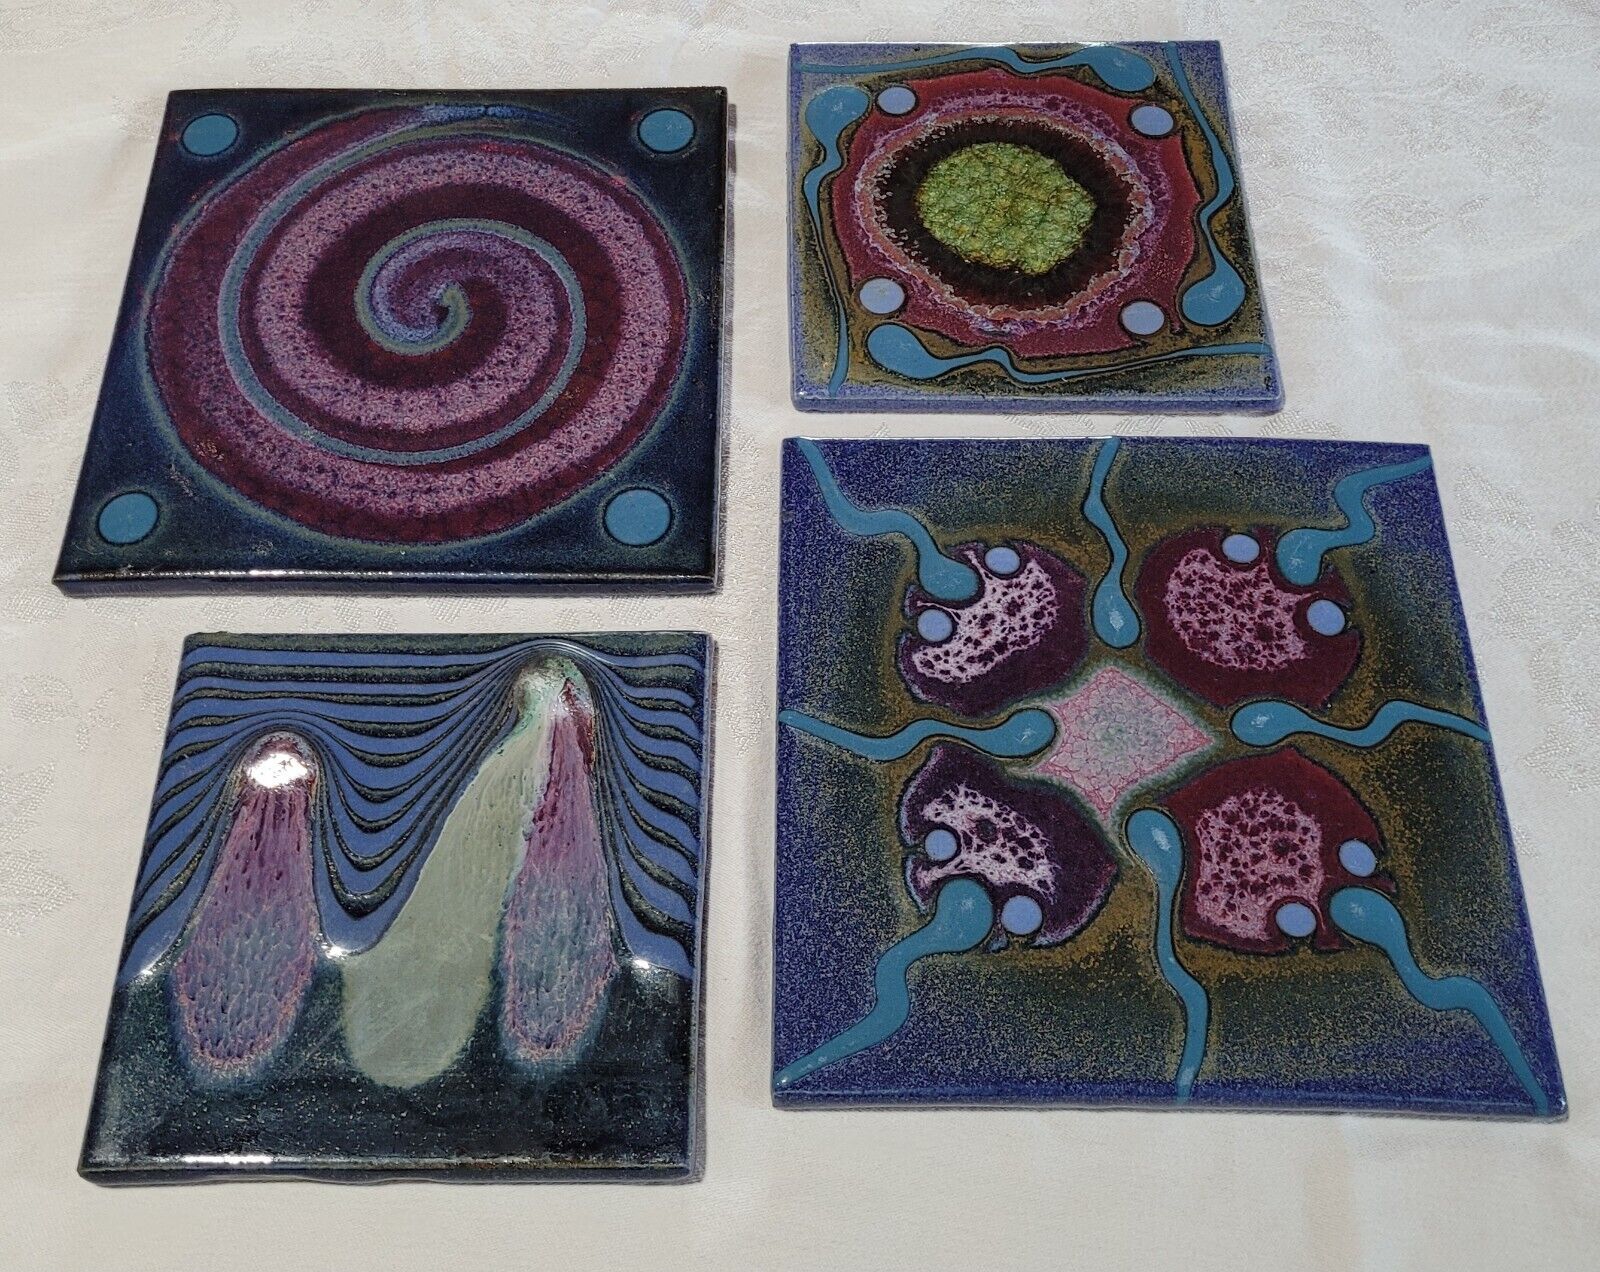 4 Matthew Patton Orcas Island Art Pottery Trivets Pad Pot Rest Ceramic Tile MCM